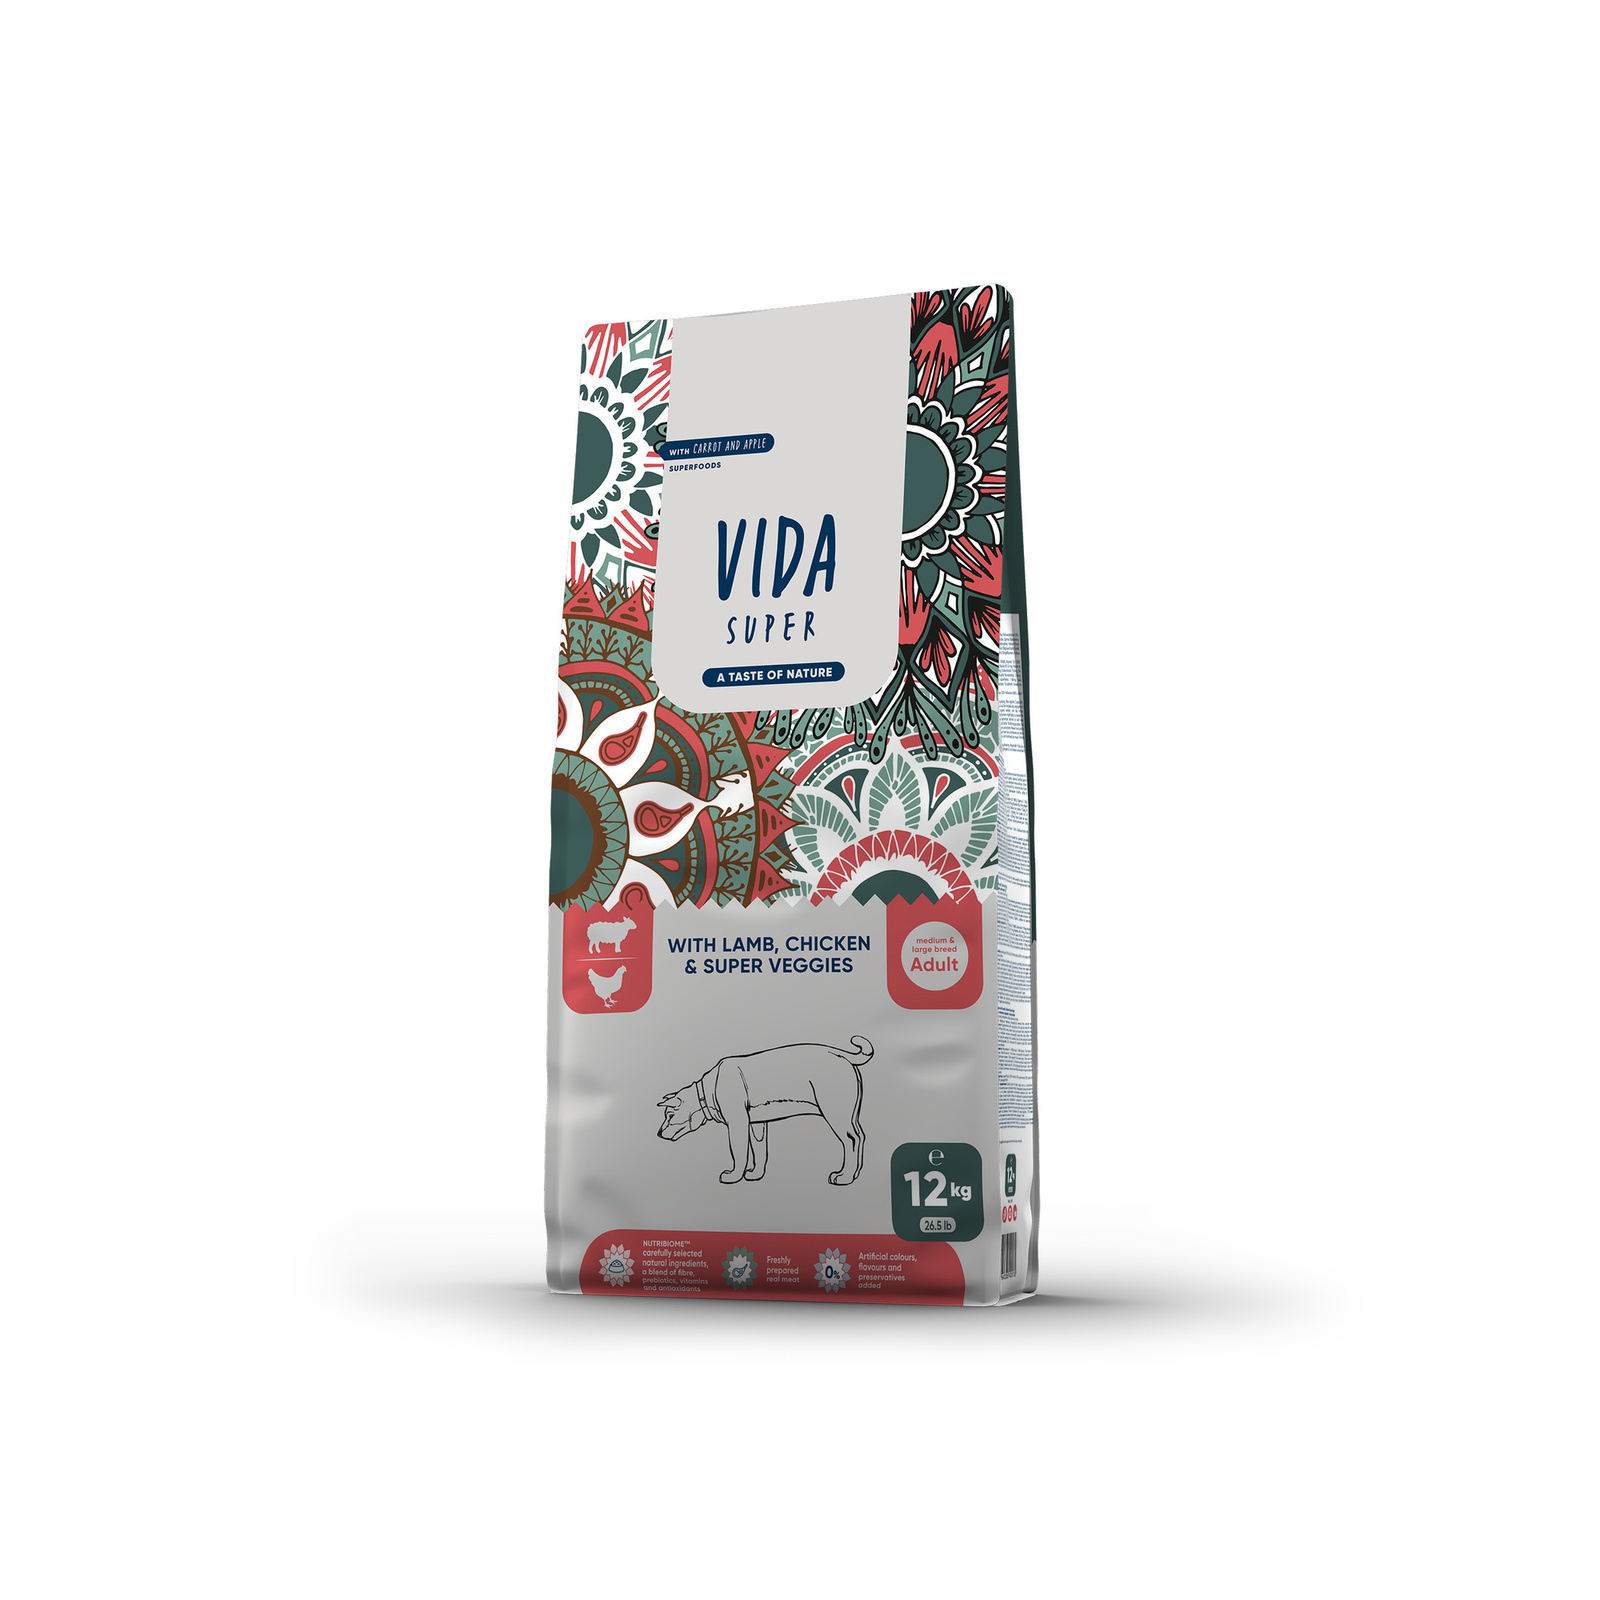 VIDA Super VIDA Super корм для взрослых собак средних и крупных пород с ягненком, курицей и овощами (12 кг)